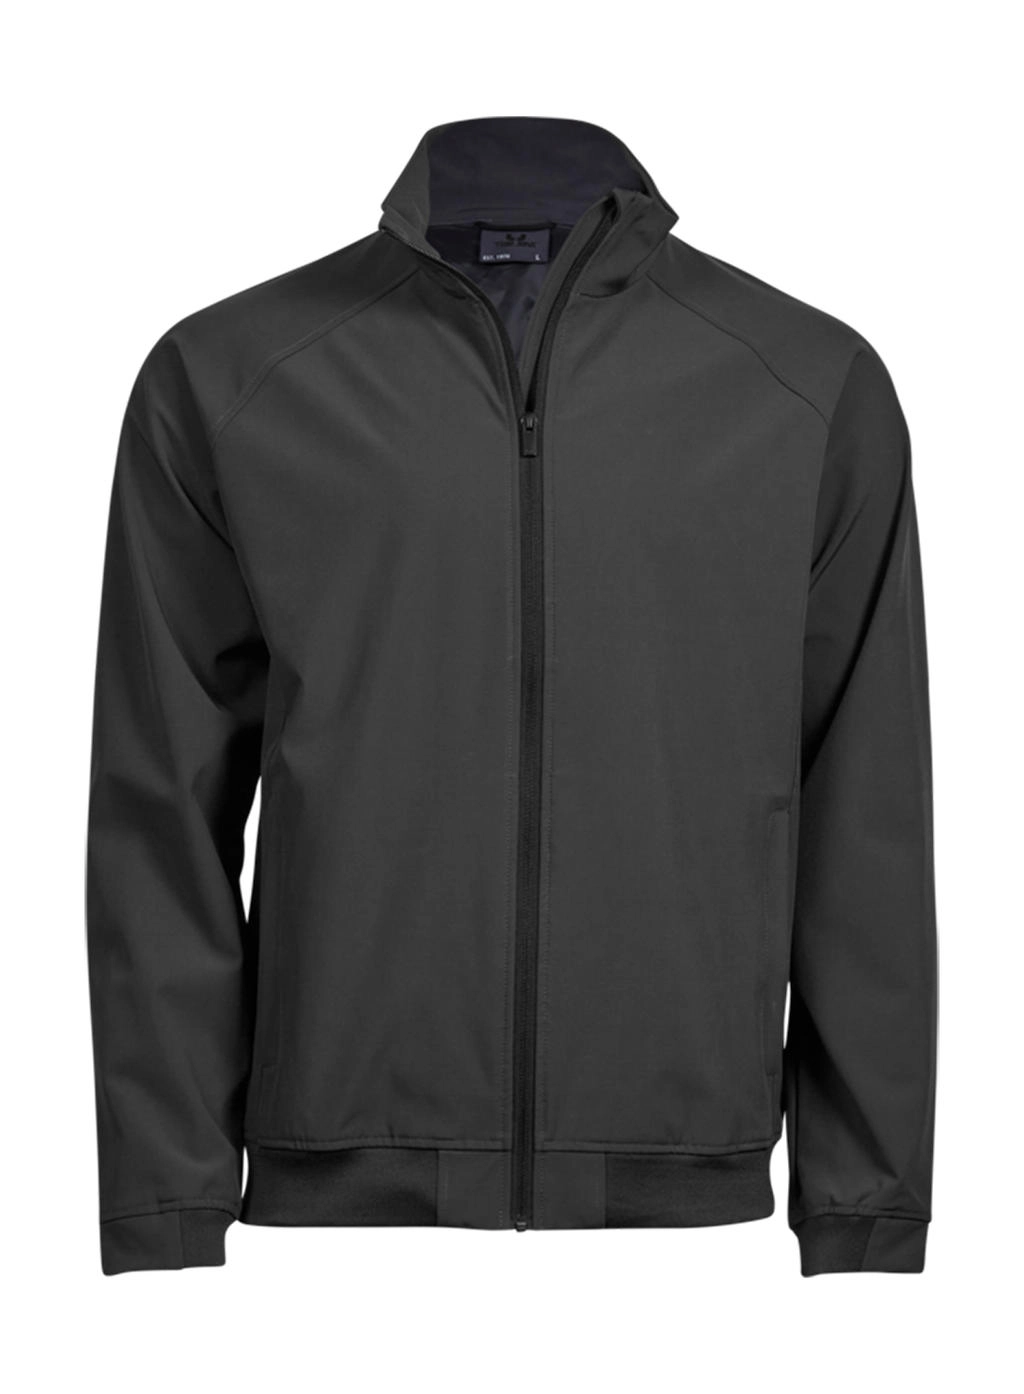 Club Jacket zum Besticken und Bedrucken in der Farbe Dark Grey mit Ihren Logo, Schriftzug oder Motiv.